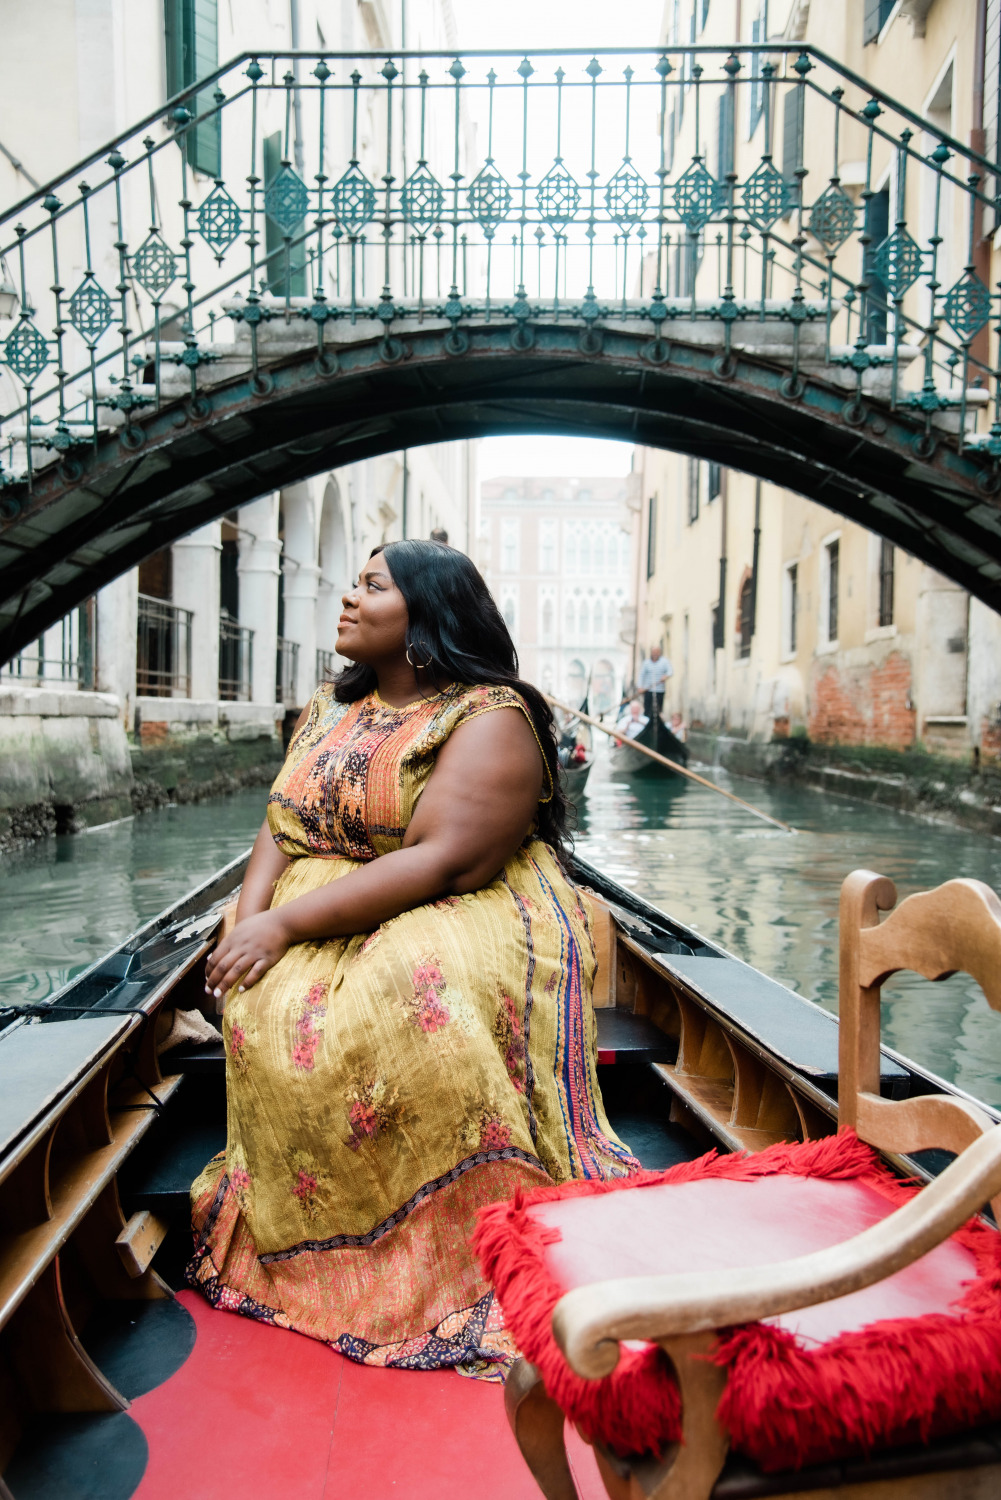 Venice Italy, Gondola Ride, Black women on gondola in Venice Italy